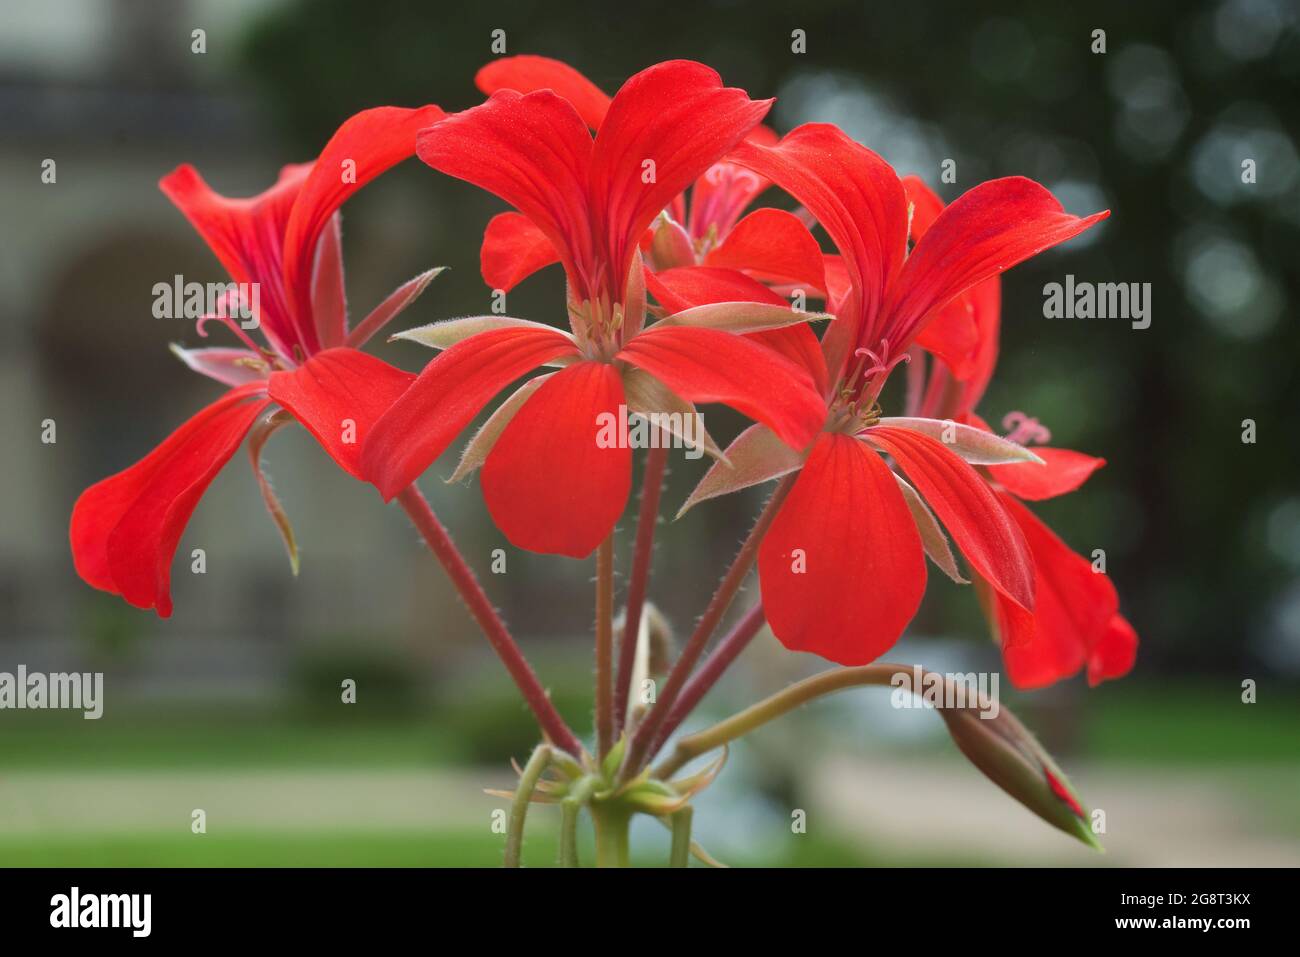 Géranium à l'ivée rouge en fleurs Pelargonium peltatum dans un jardin. Également connu sous le nom de pélargonium à feuilles de lierre ou géranium en cascade. Banque D'Images